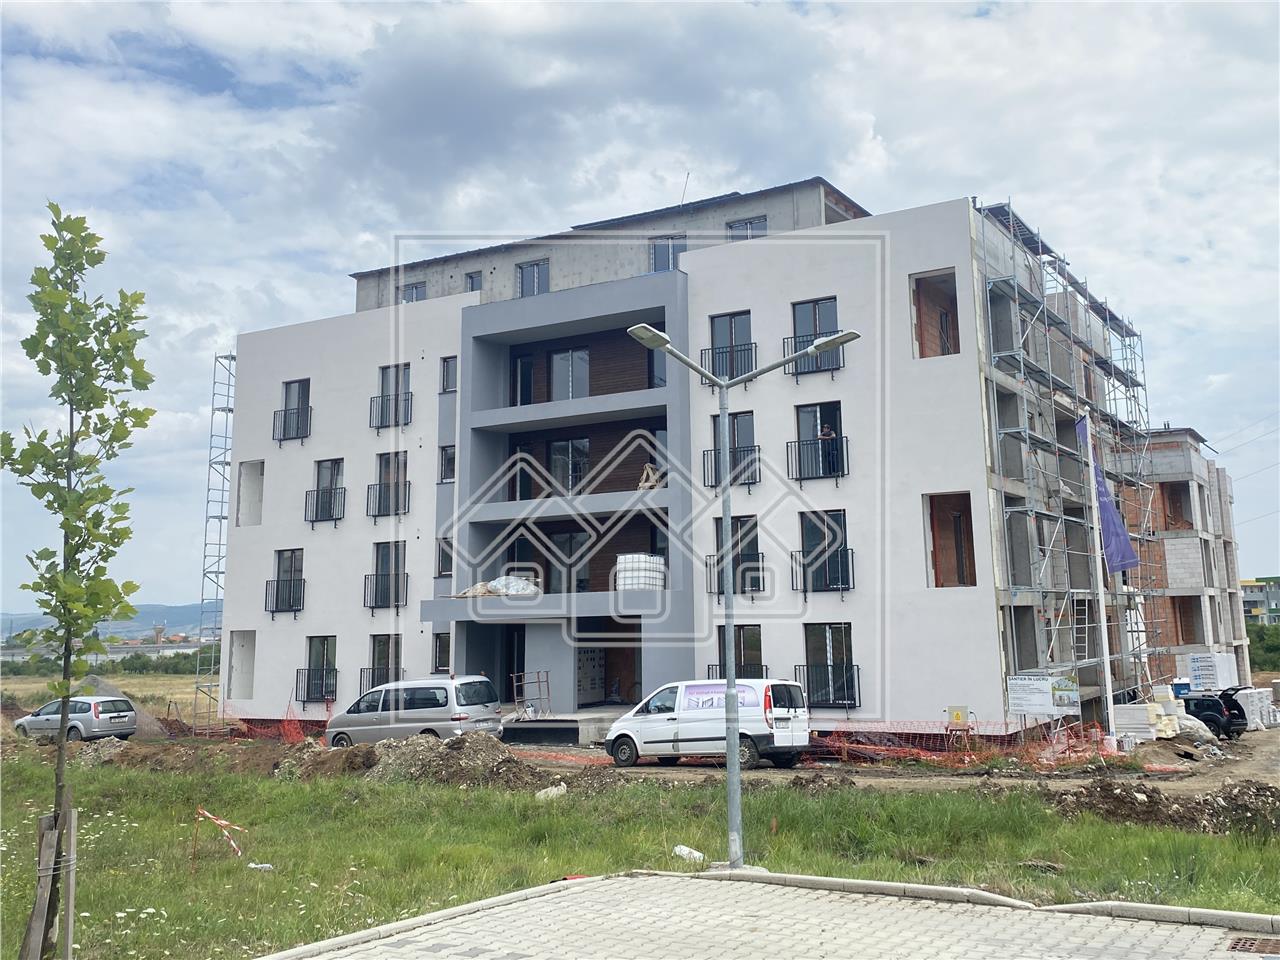 Apartament de vanzare in Sibiu - C3-terasa 32 mp- bloc cu lift si boxa